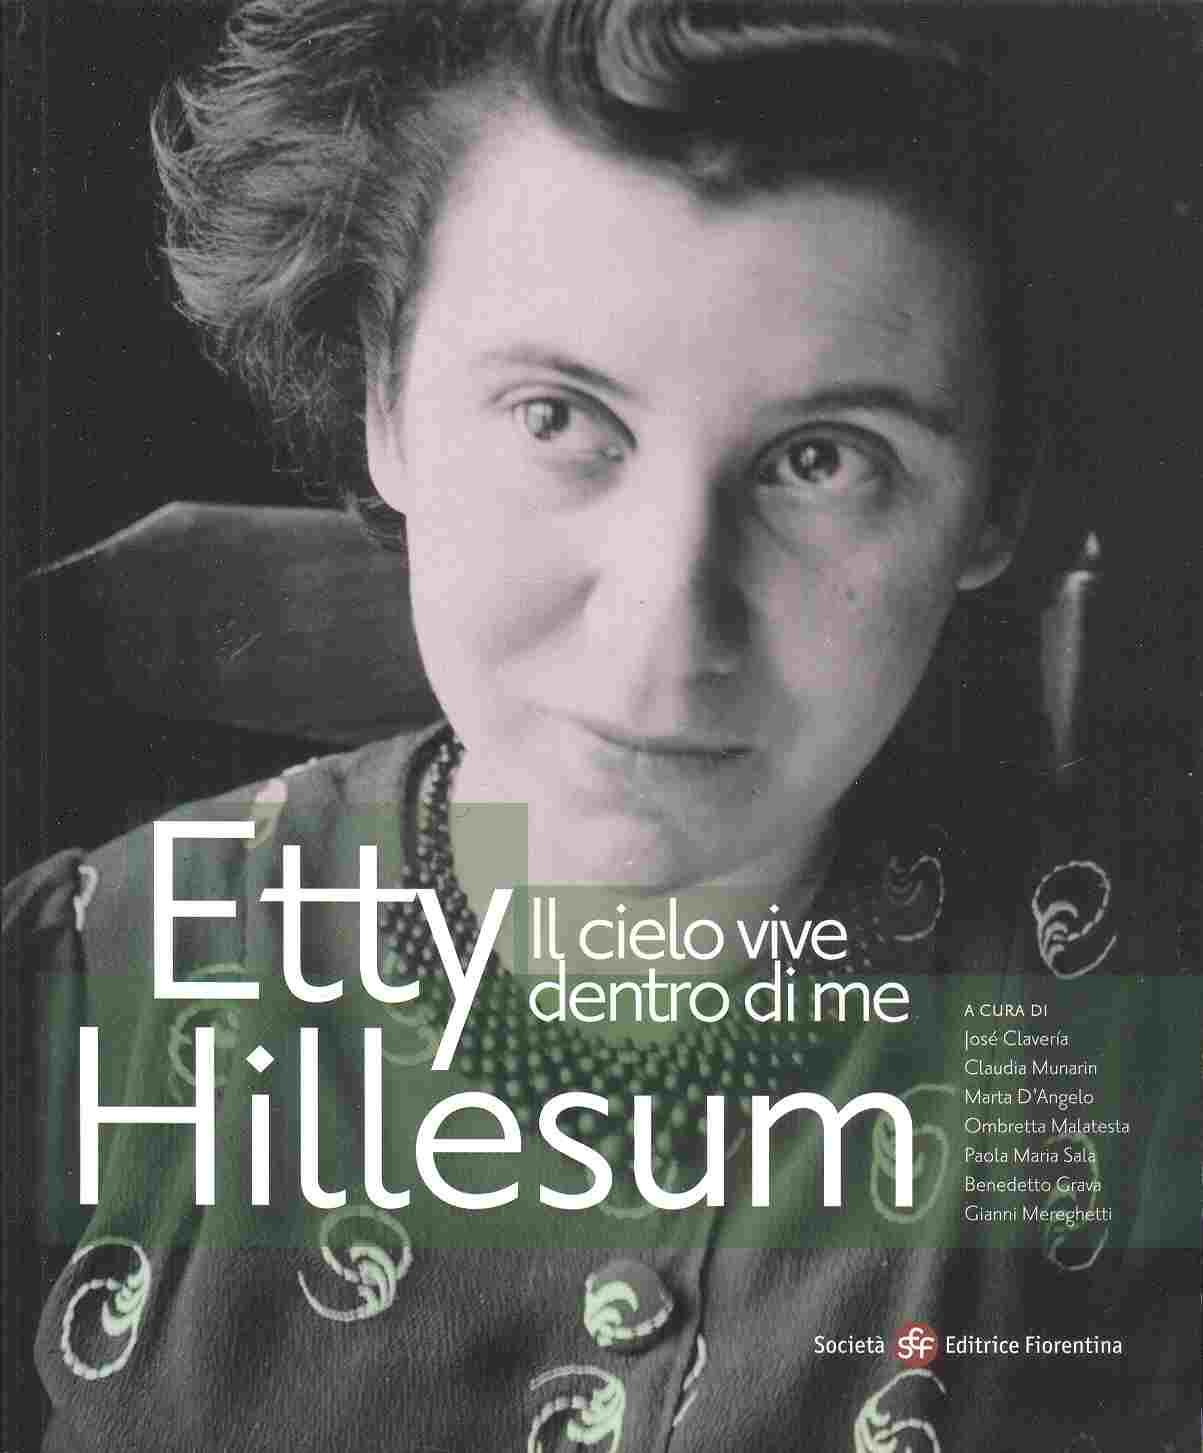 Een Etty Hillesum expositie in Rimini